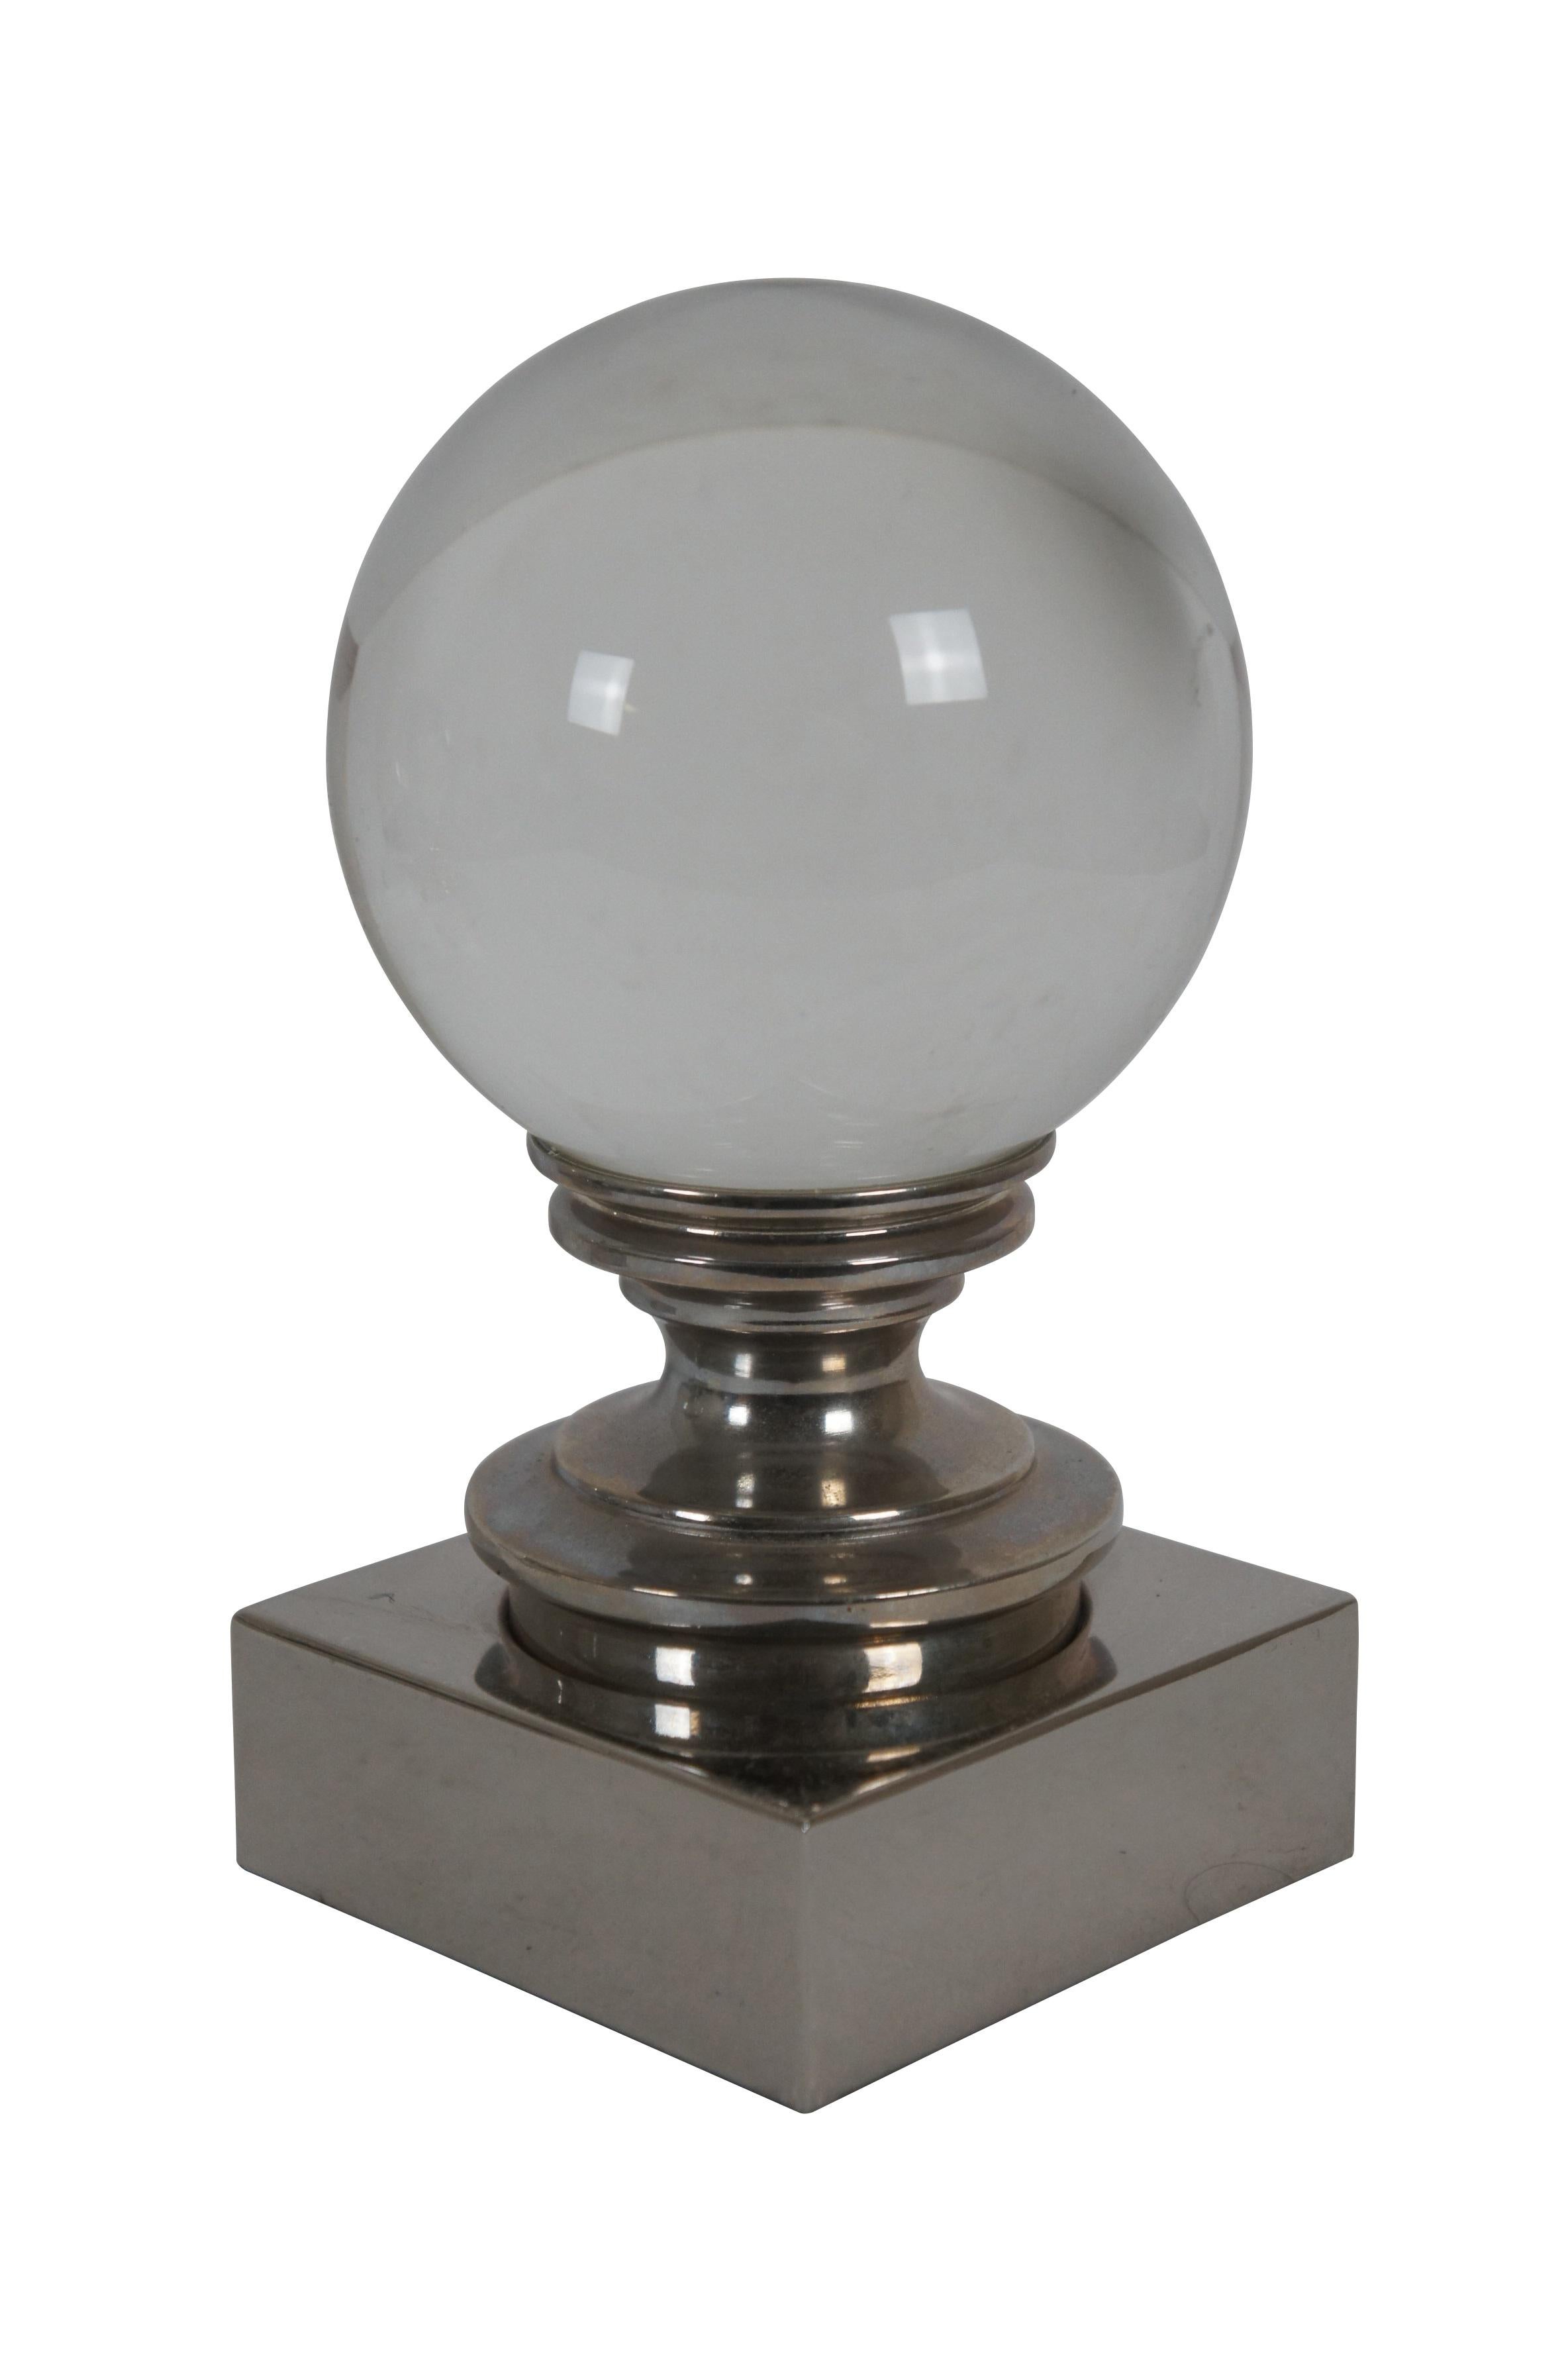 2 Vintage Restoration Hardware Crystal Ball Bookends on Chrome Pedestal 7